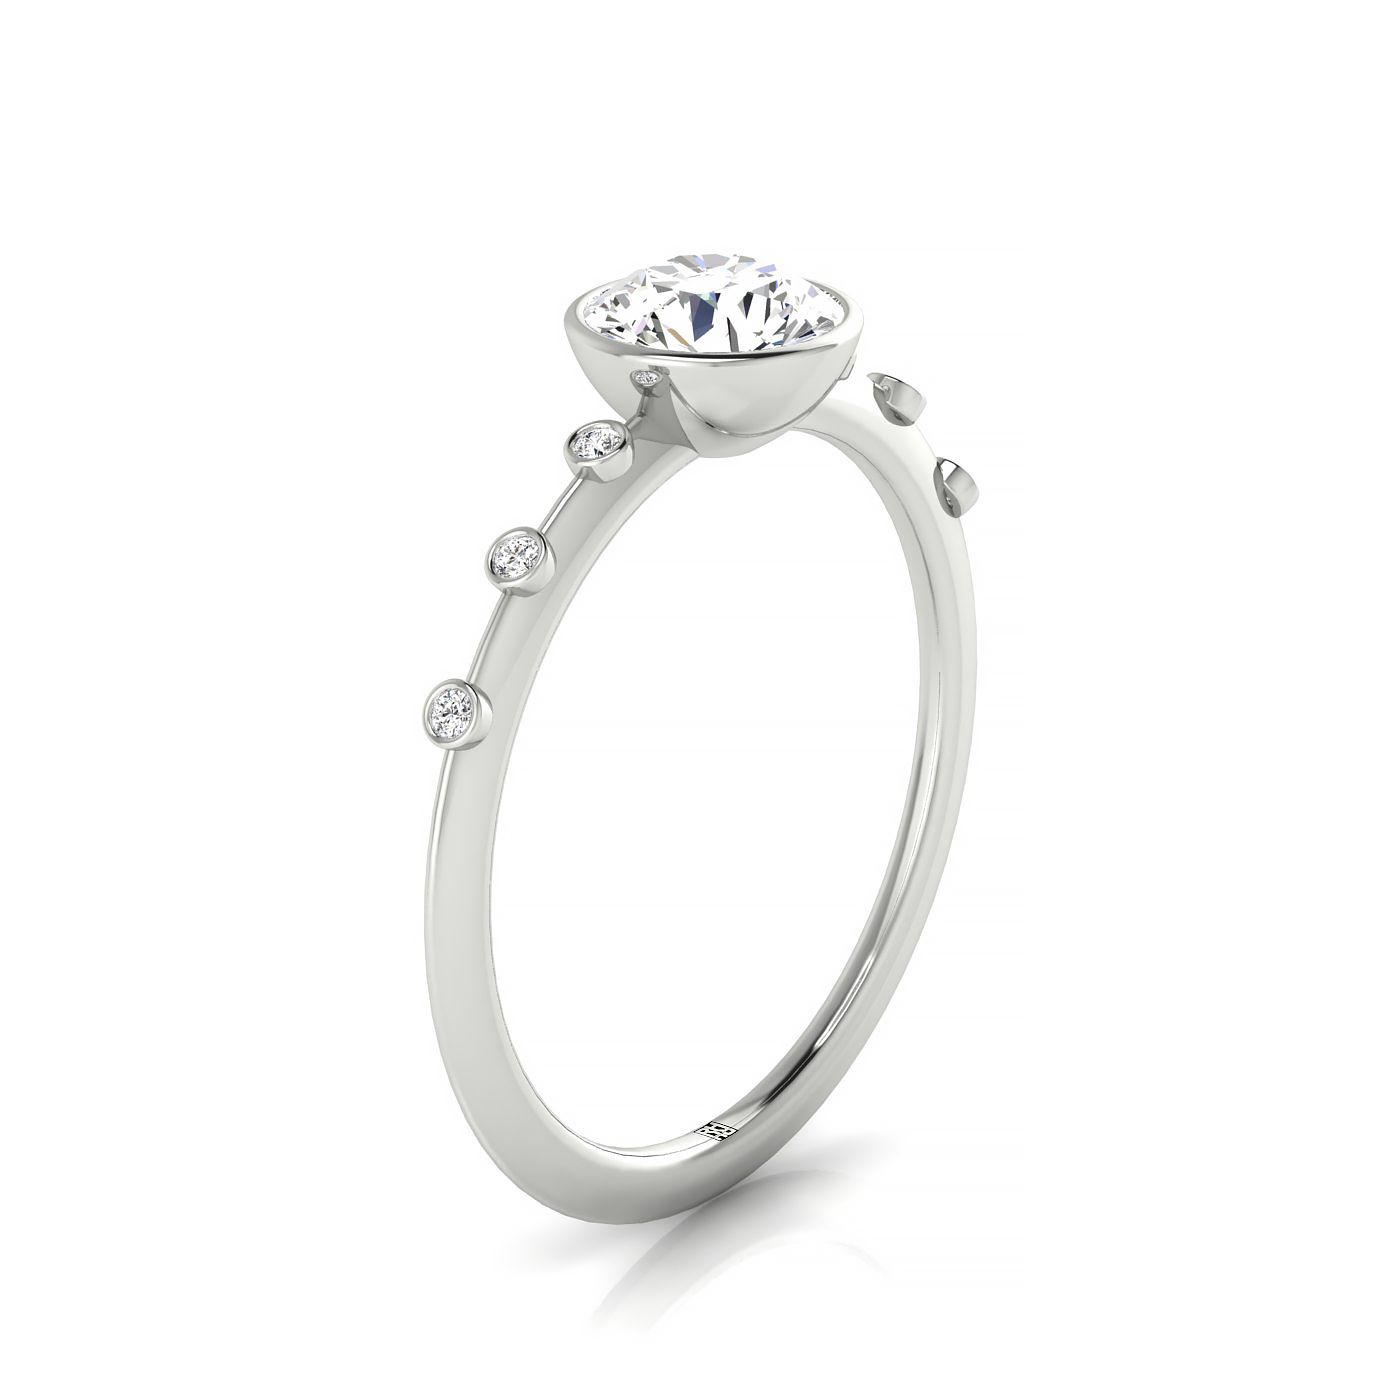 18kw Bezel Set Round Engagement Ring With 6 Bezel Set Round Diamonds On Shank